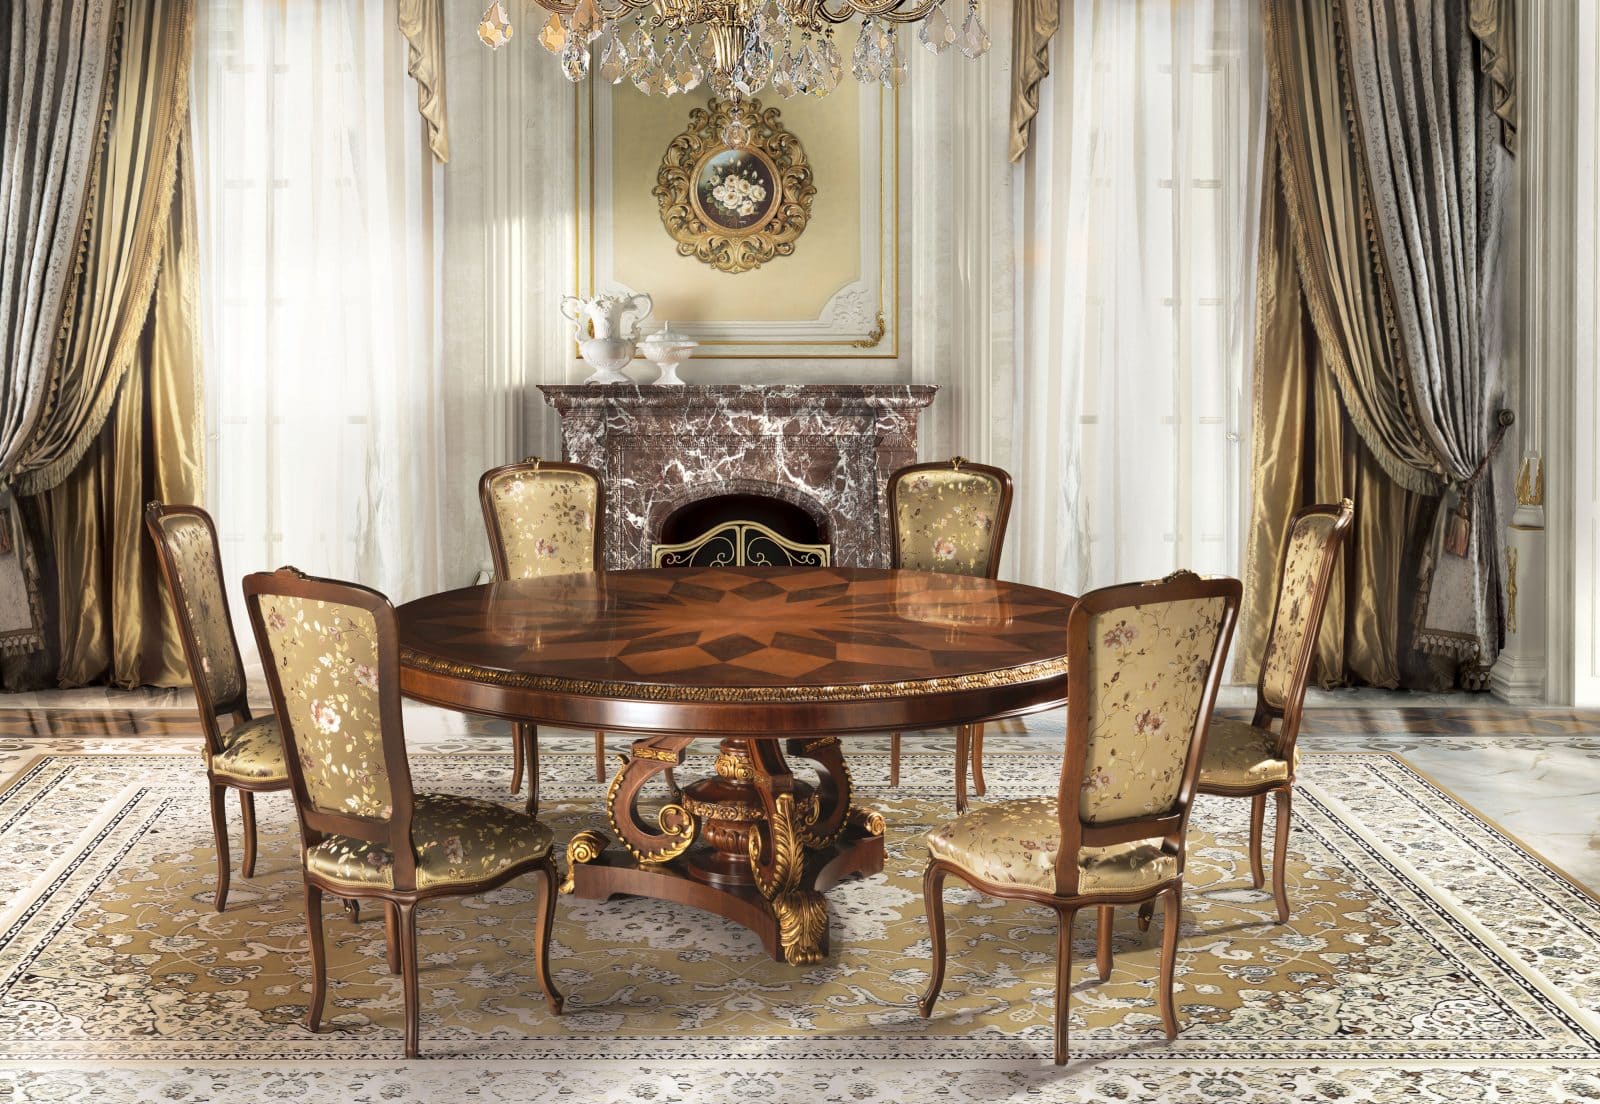 Classic Italian Dining Room Furniture : Classic Italian Dining Room